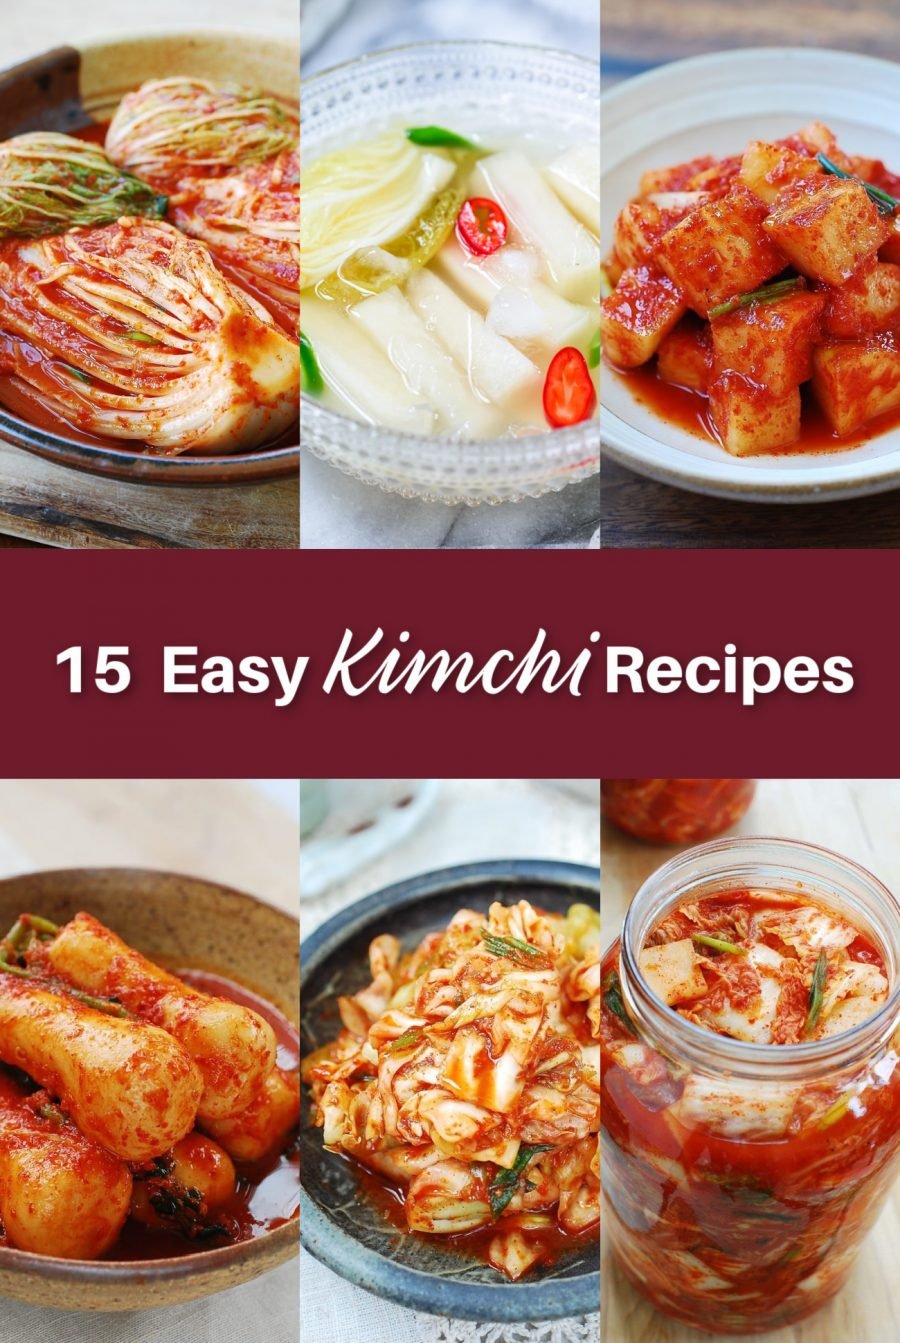 15 Easy Kimchi Recipes e1612498561532 - 15 Easy Kimchi Recipes